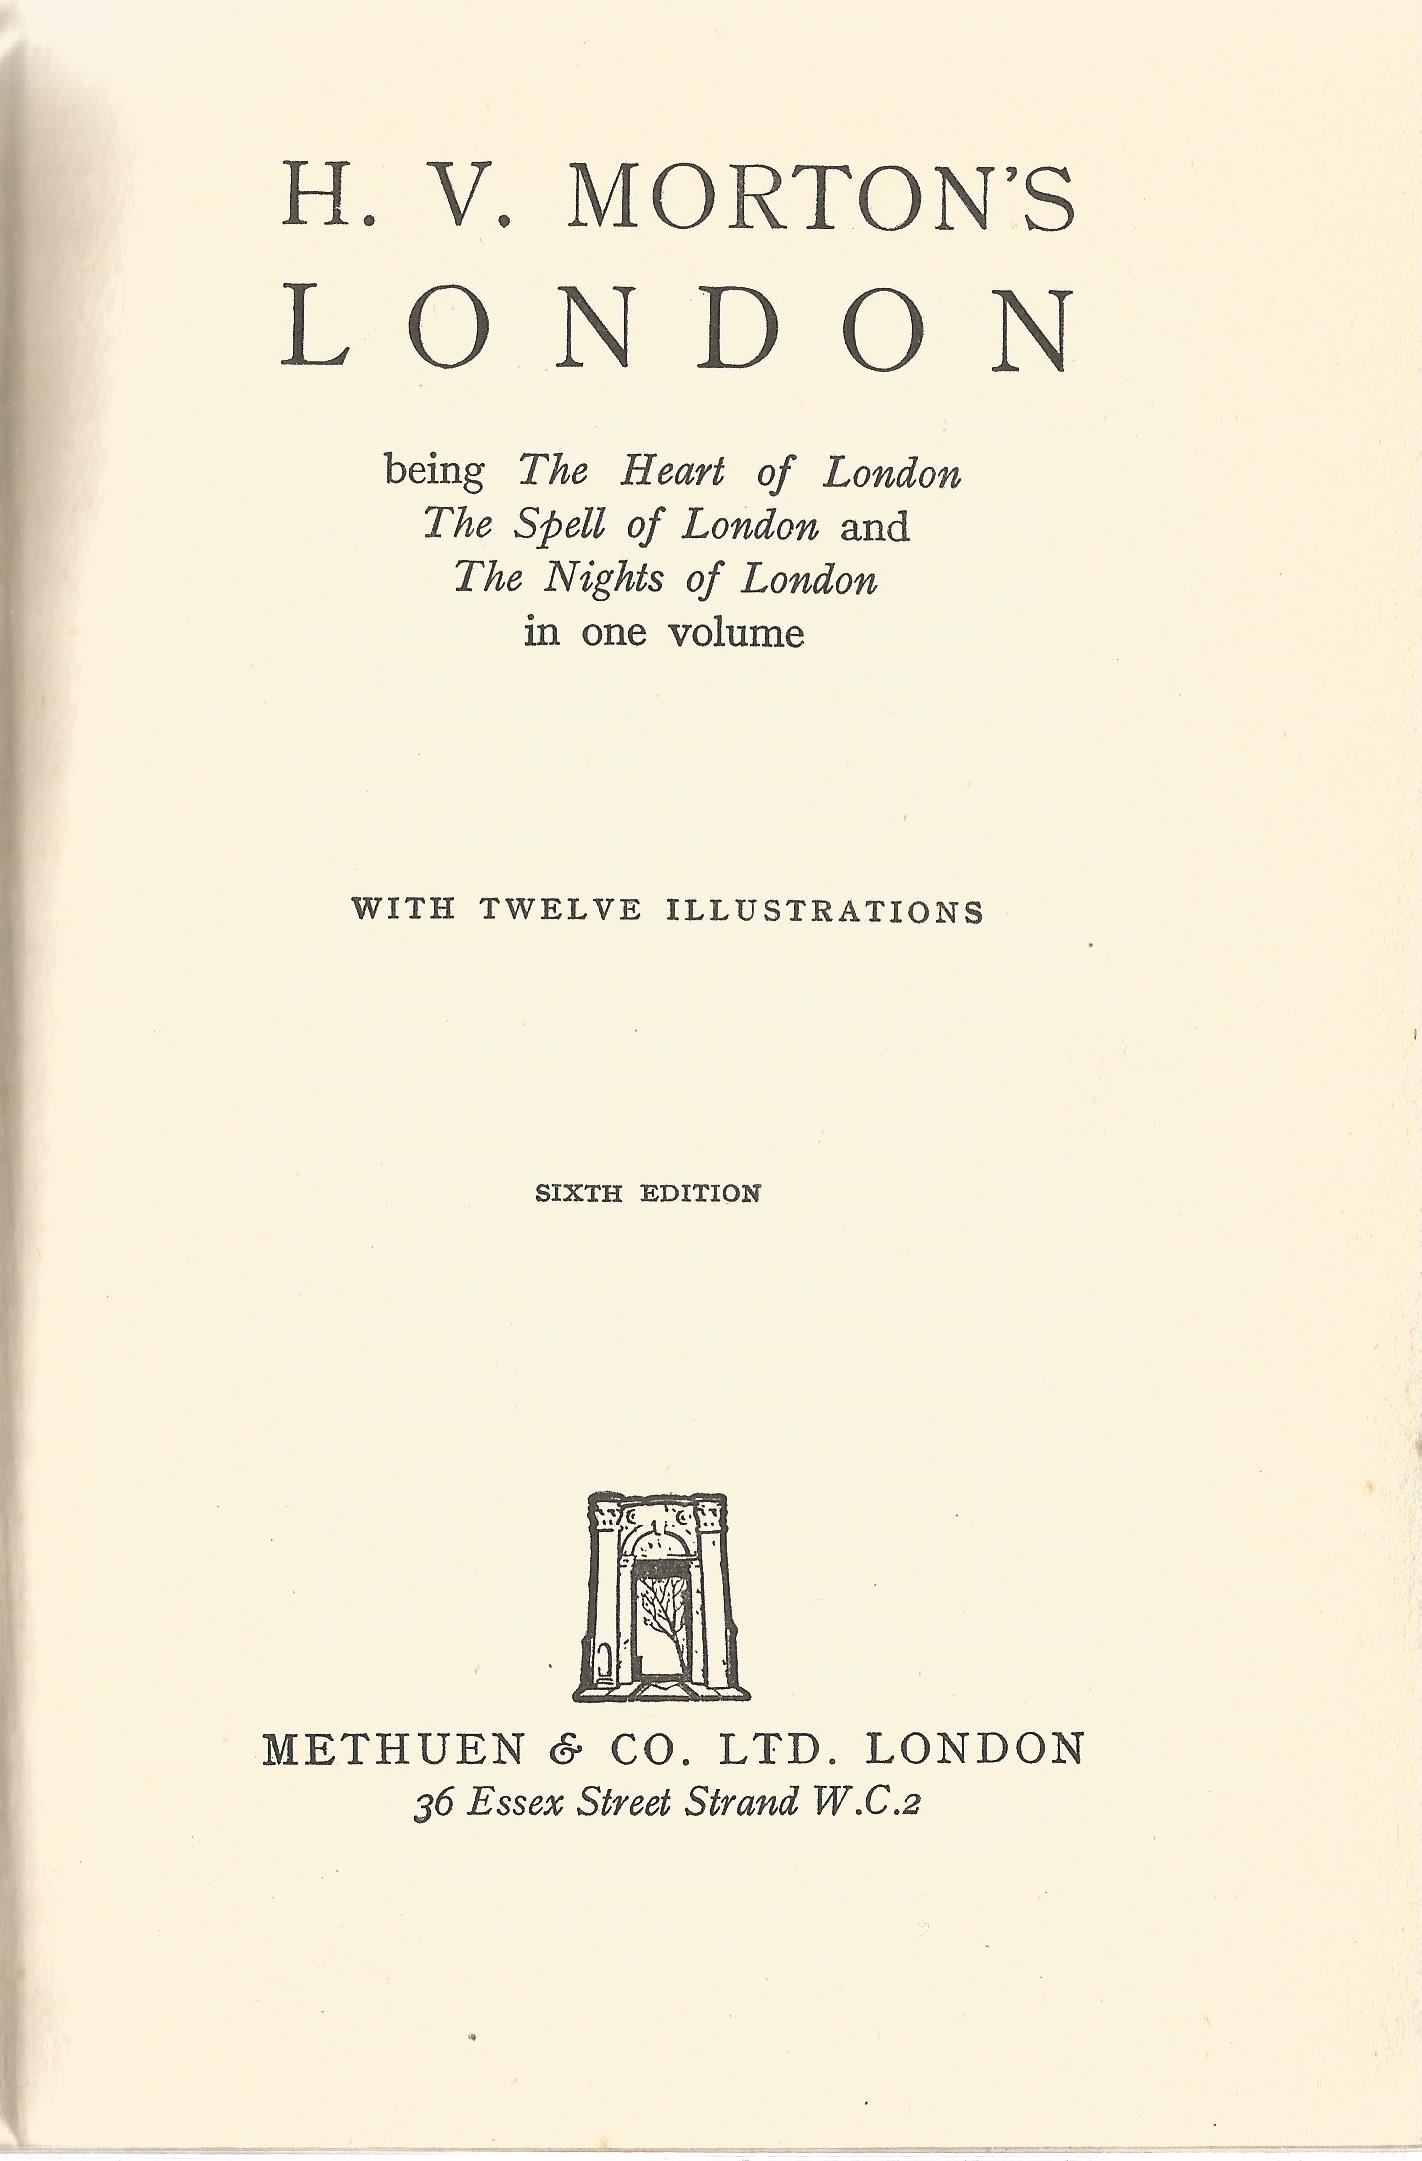 H. V. Morton hardback book H. V. Morton's London 1941 published by Methuen & Co Ltd some wear and - Image 2 of 2